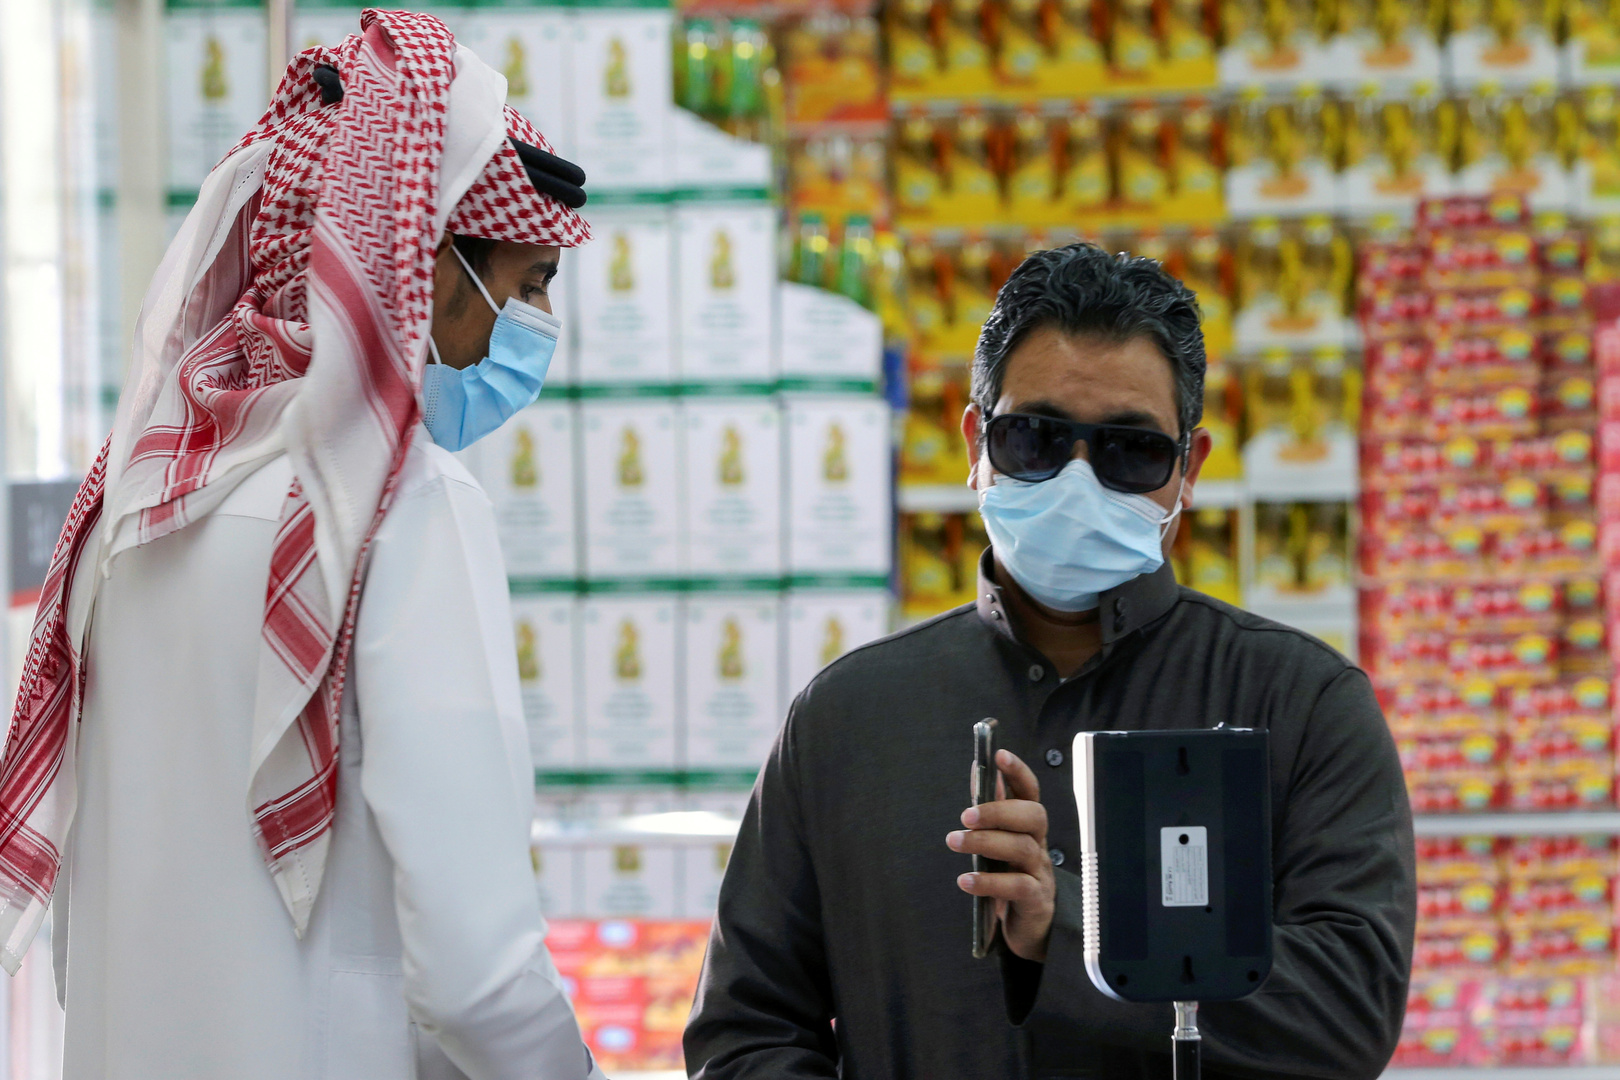 السعودية..بدء سريان اشتراط التحصين المعتمد من وزارة الصحة للدخول إلى المنشآت اعتبارا من 1 أغسطس